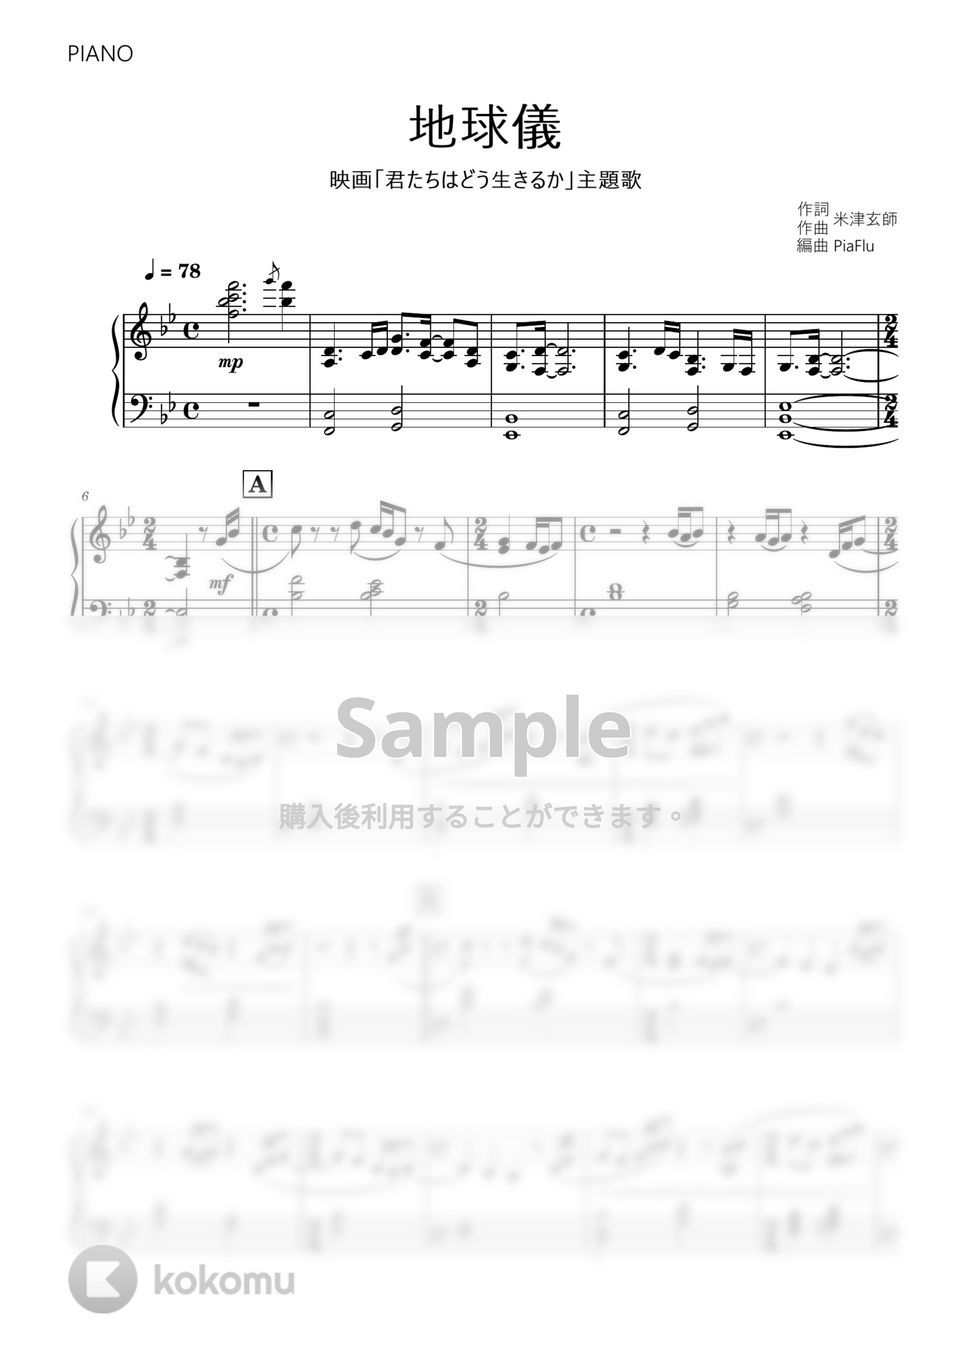 米津玄師 - 地球儀 (ピアノ) by PiaFlu